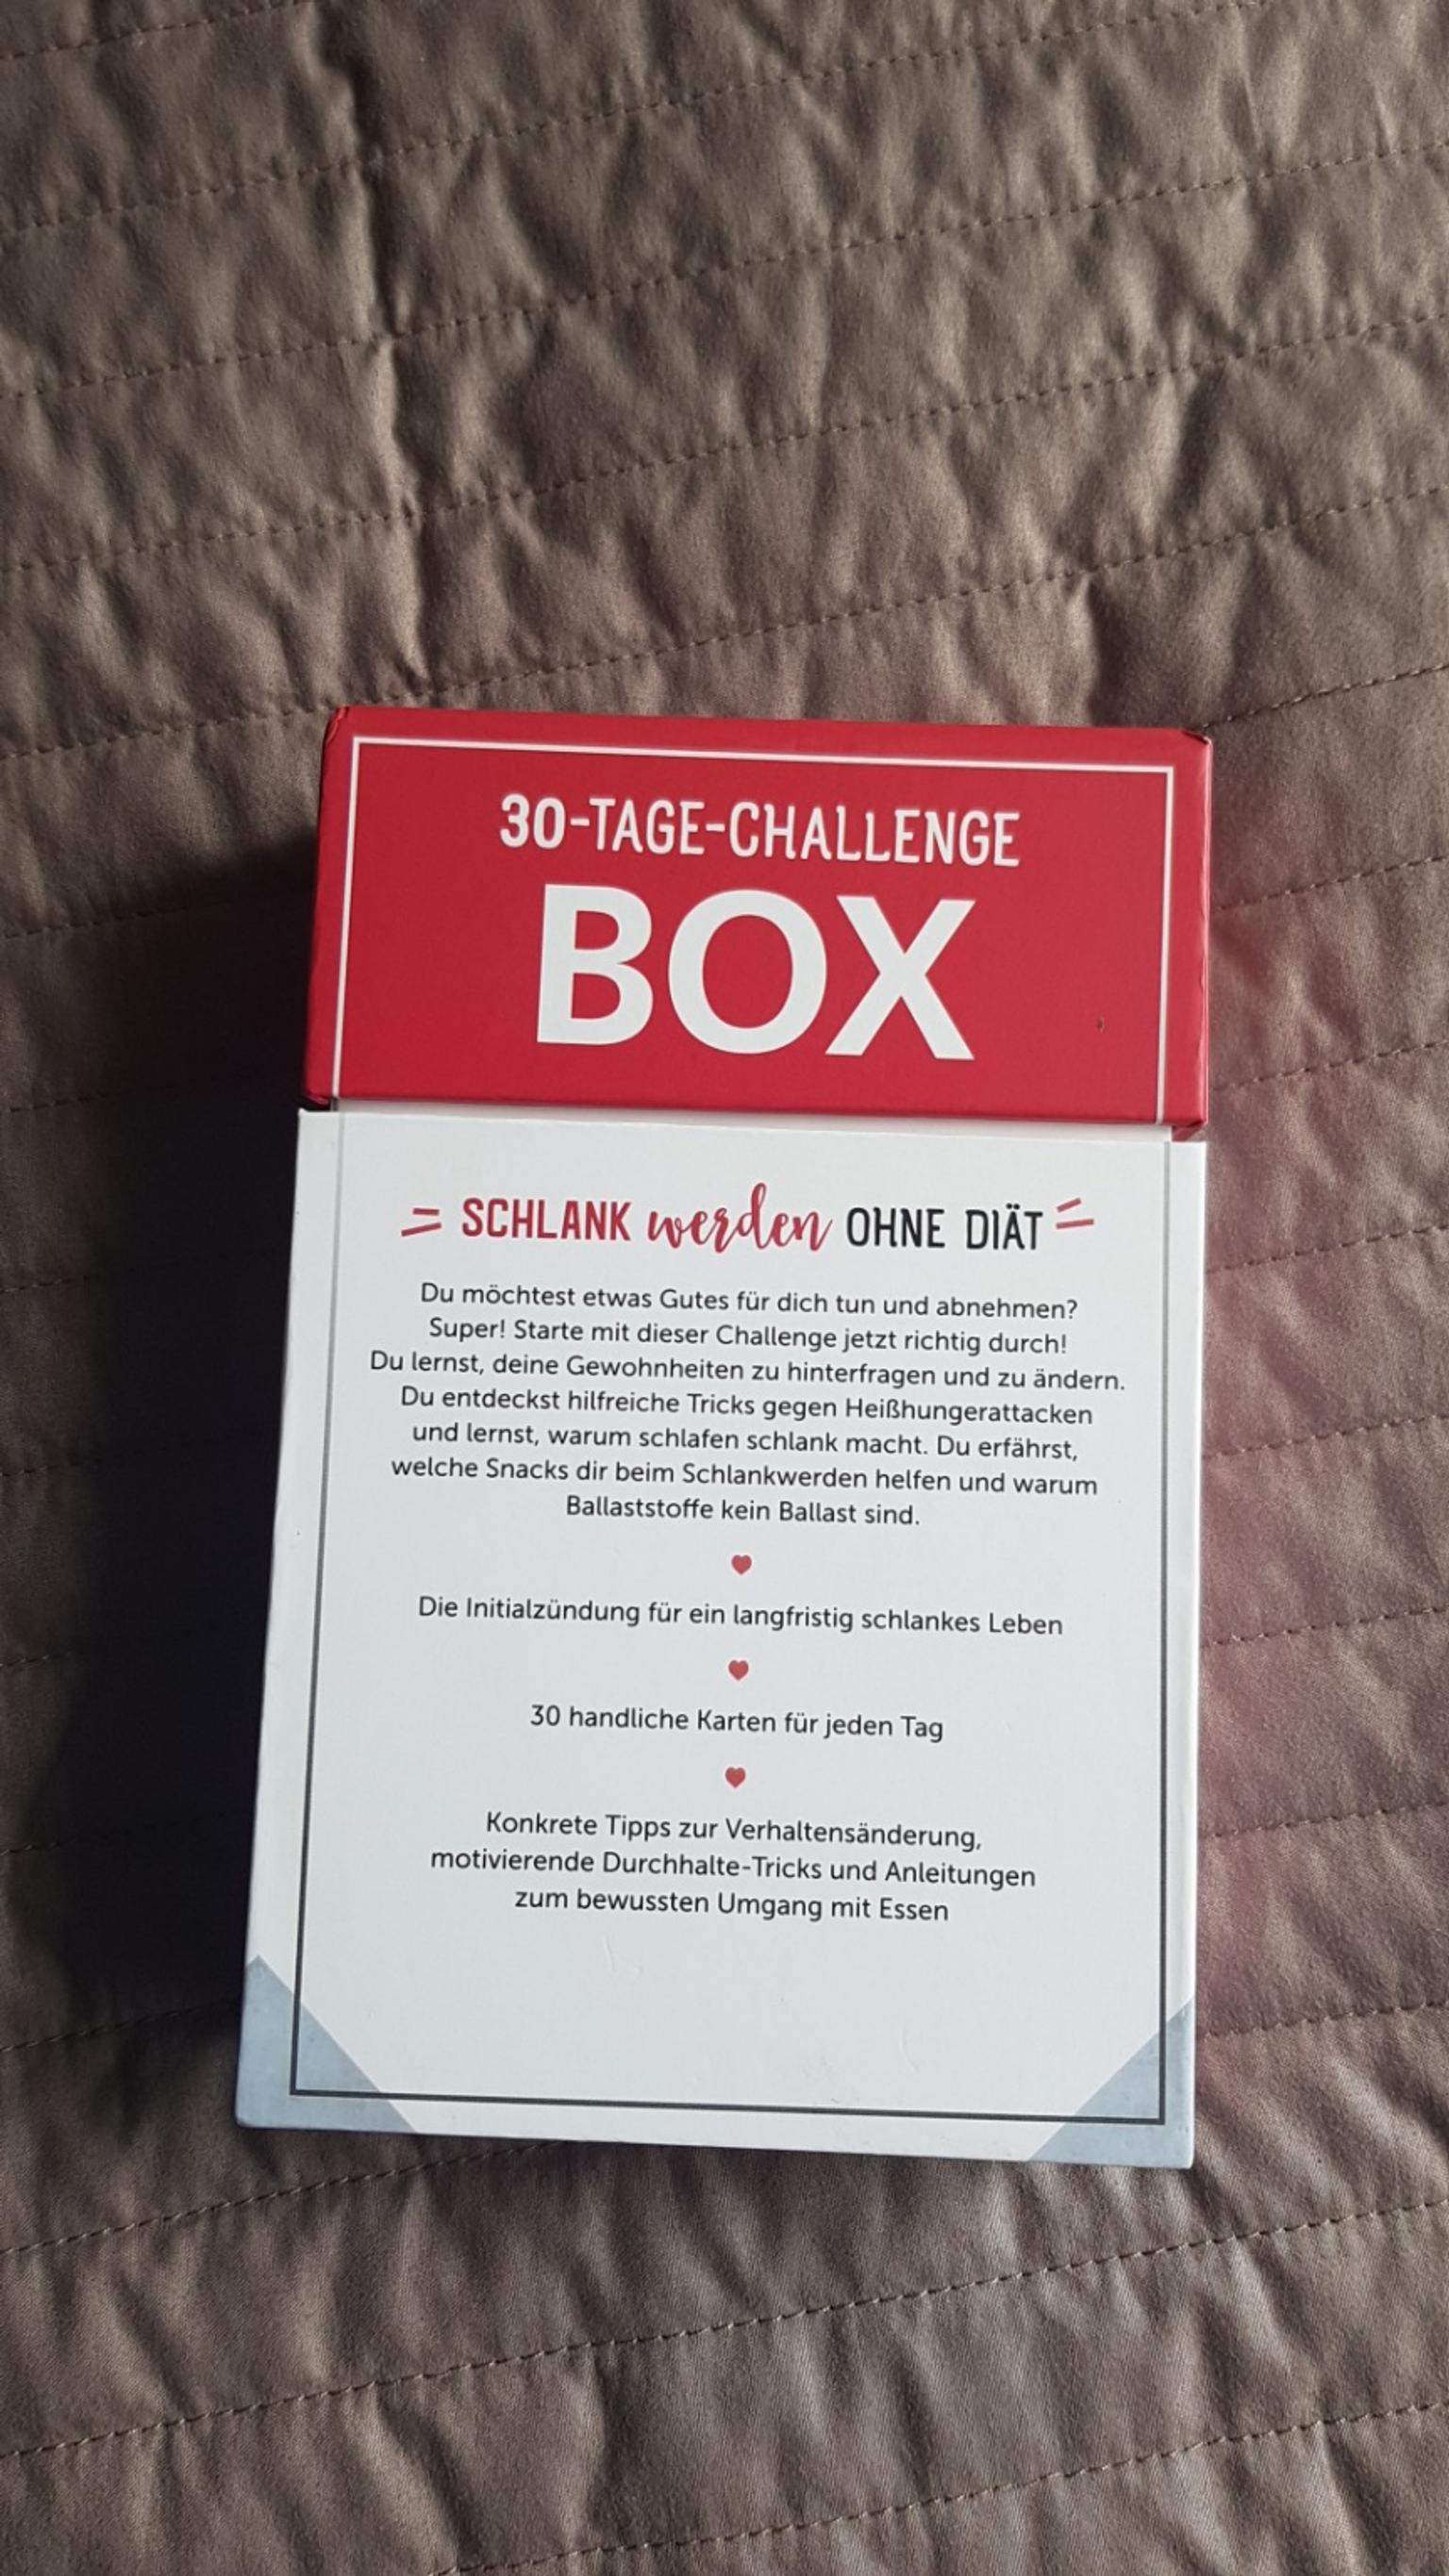 Abnehmen Box 30 e Challenge In Heilbronn For 10 00 For Sale Shpock